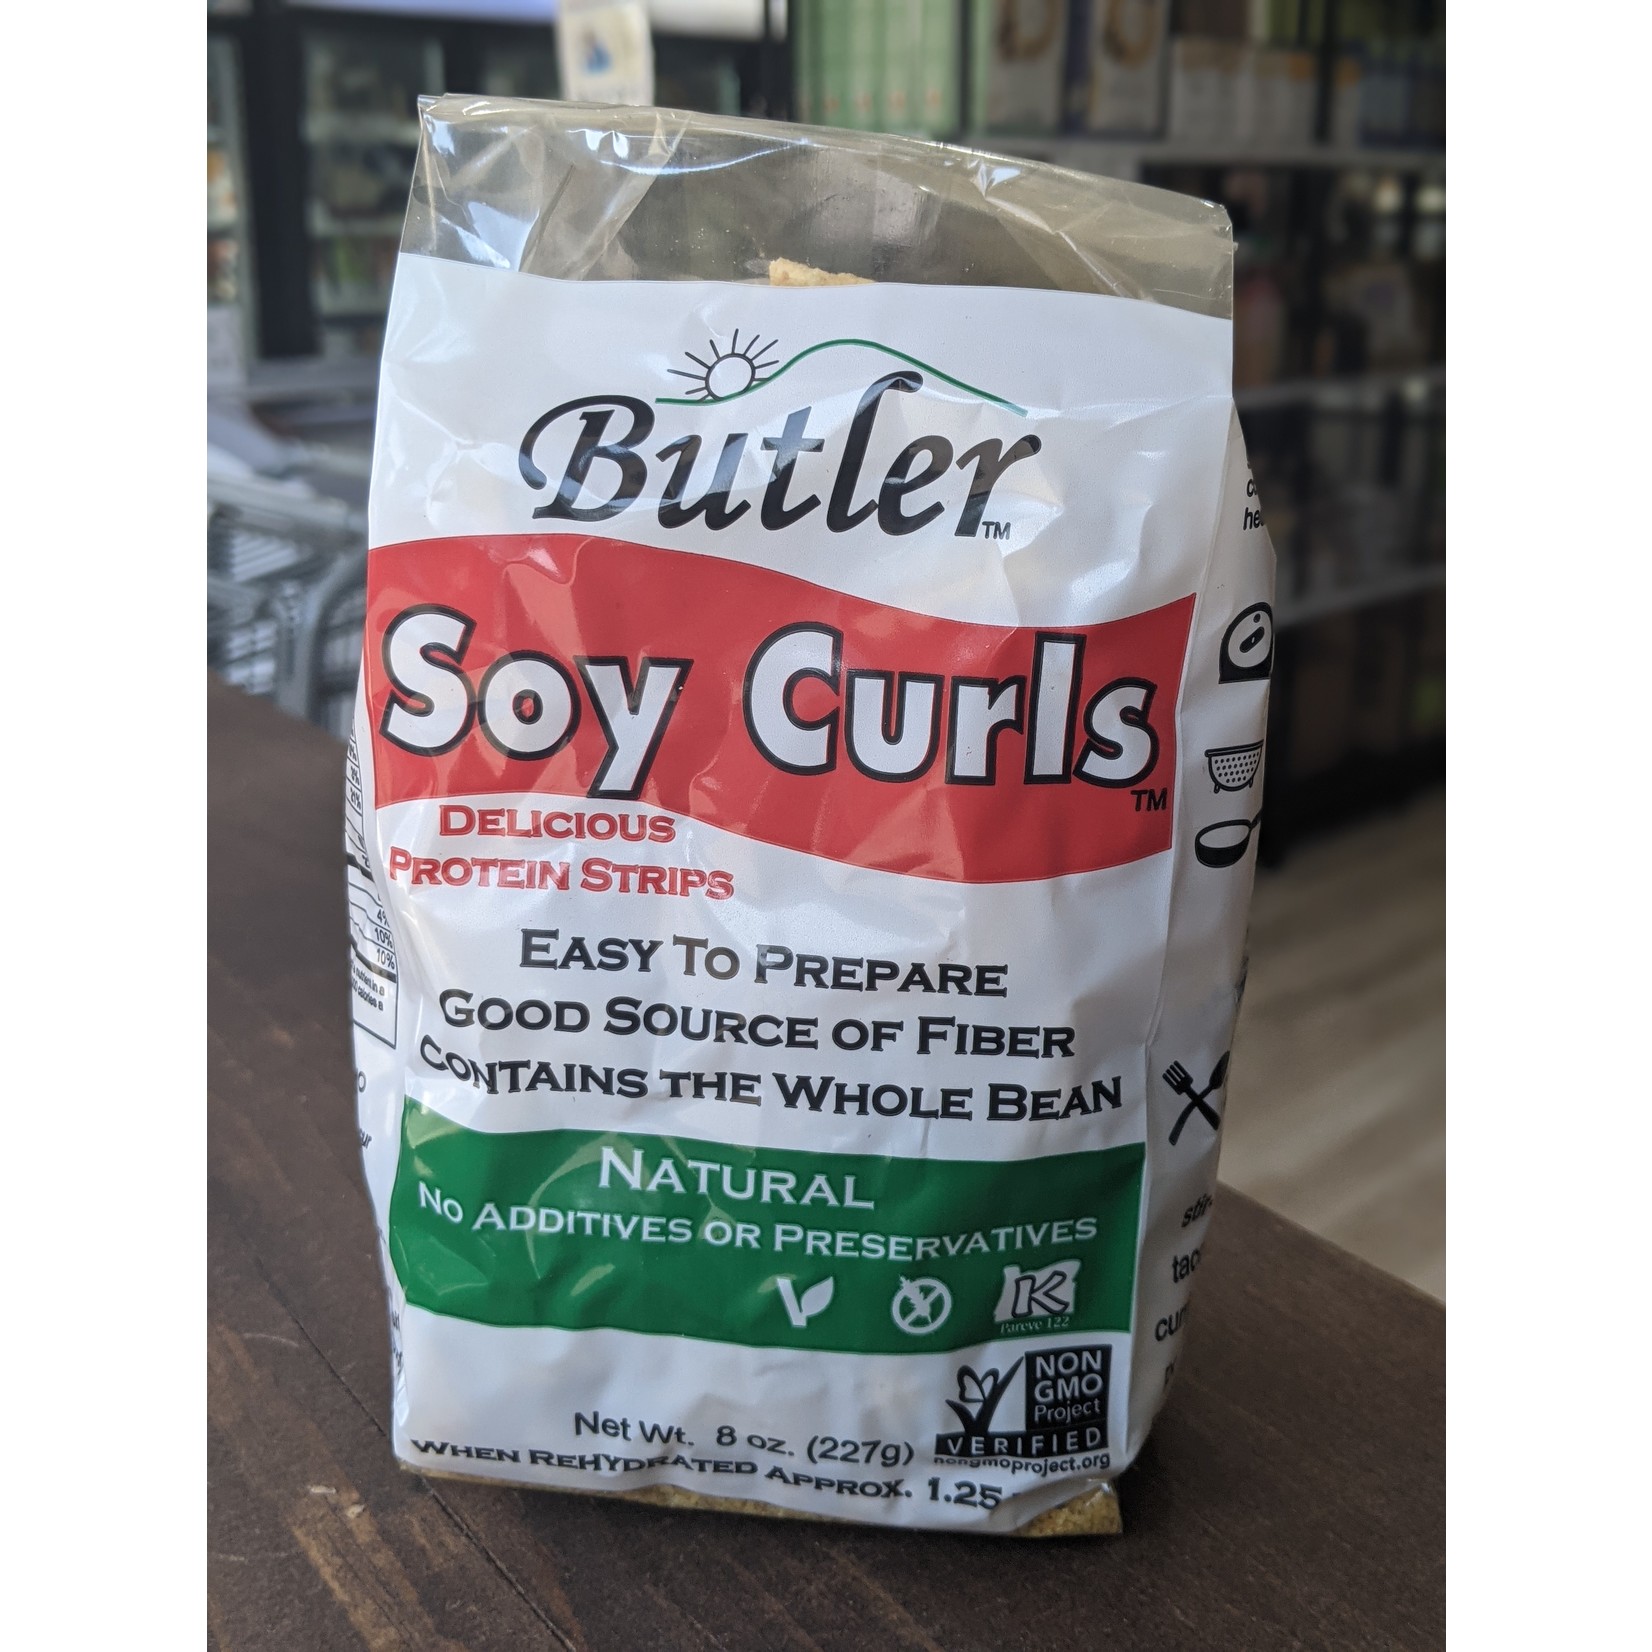 BUTLER FOODS BUTLER'S SOY CURLS